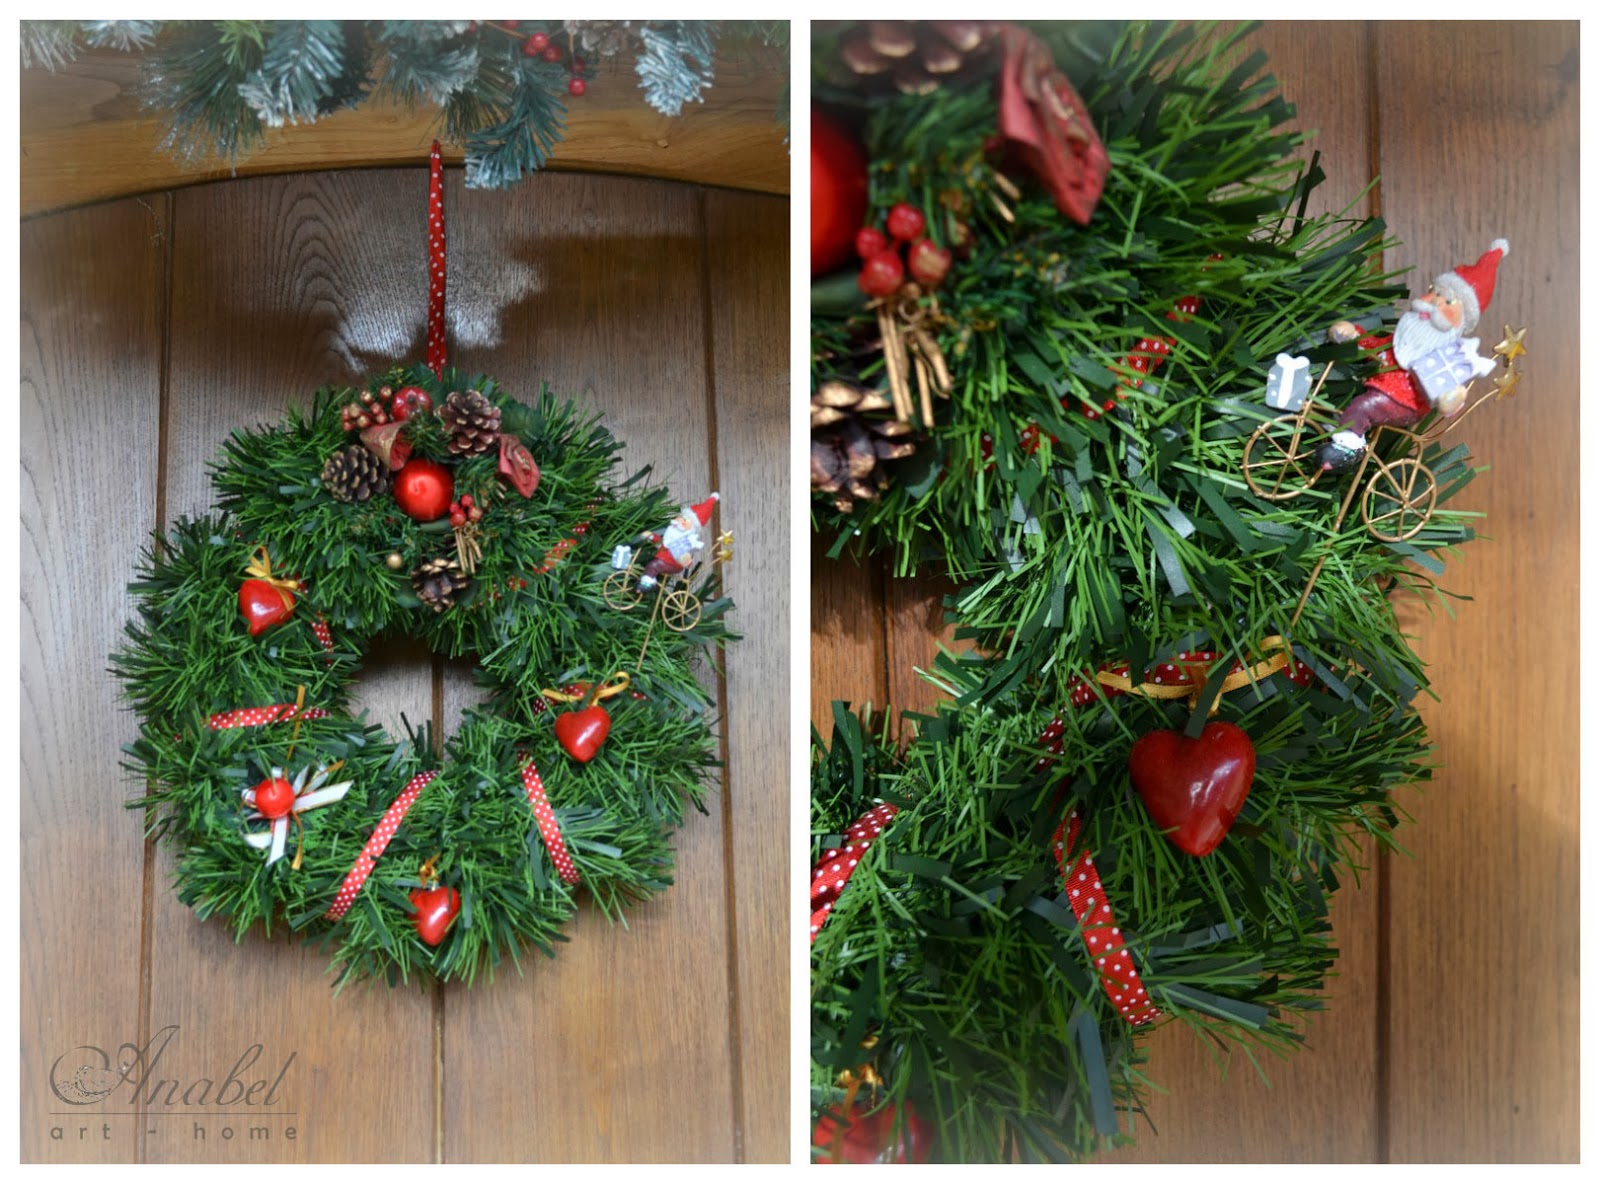 Corona de navidad, Christmas wreath, decoración de navidad, decoration